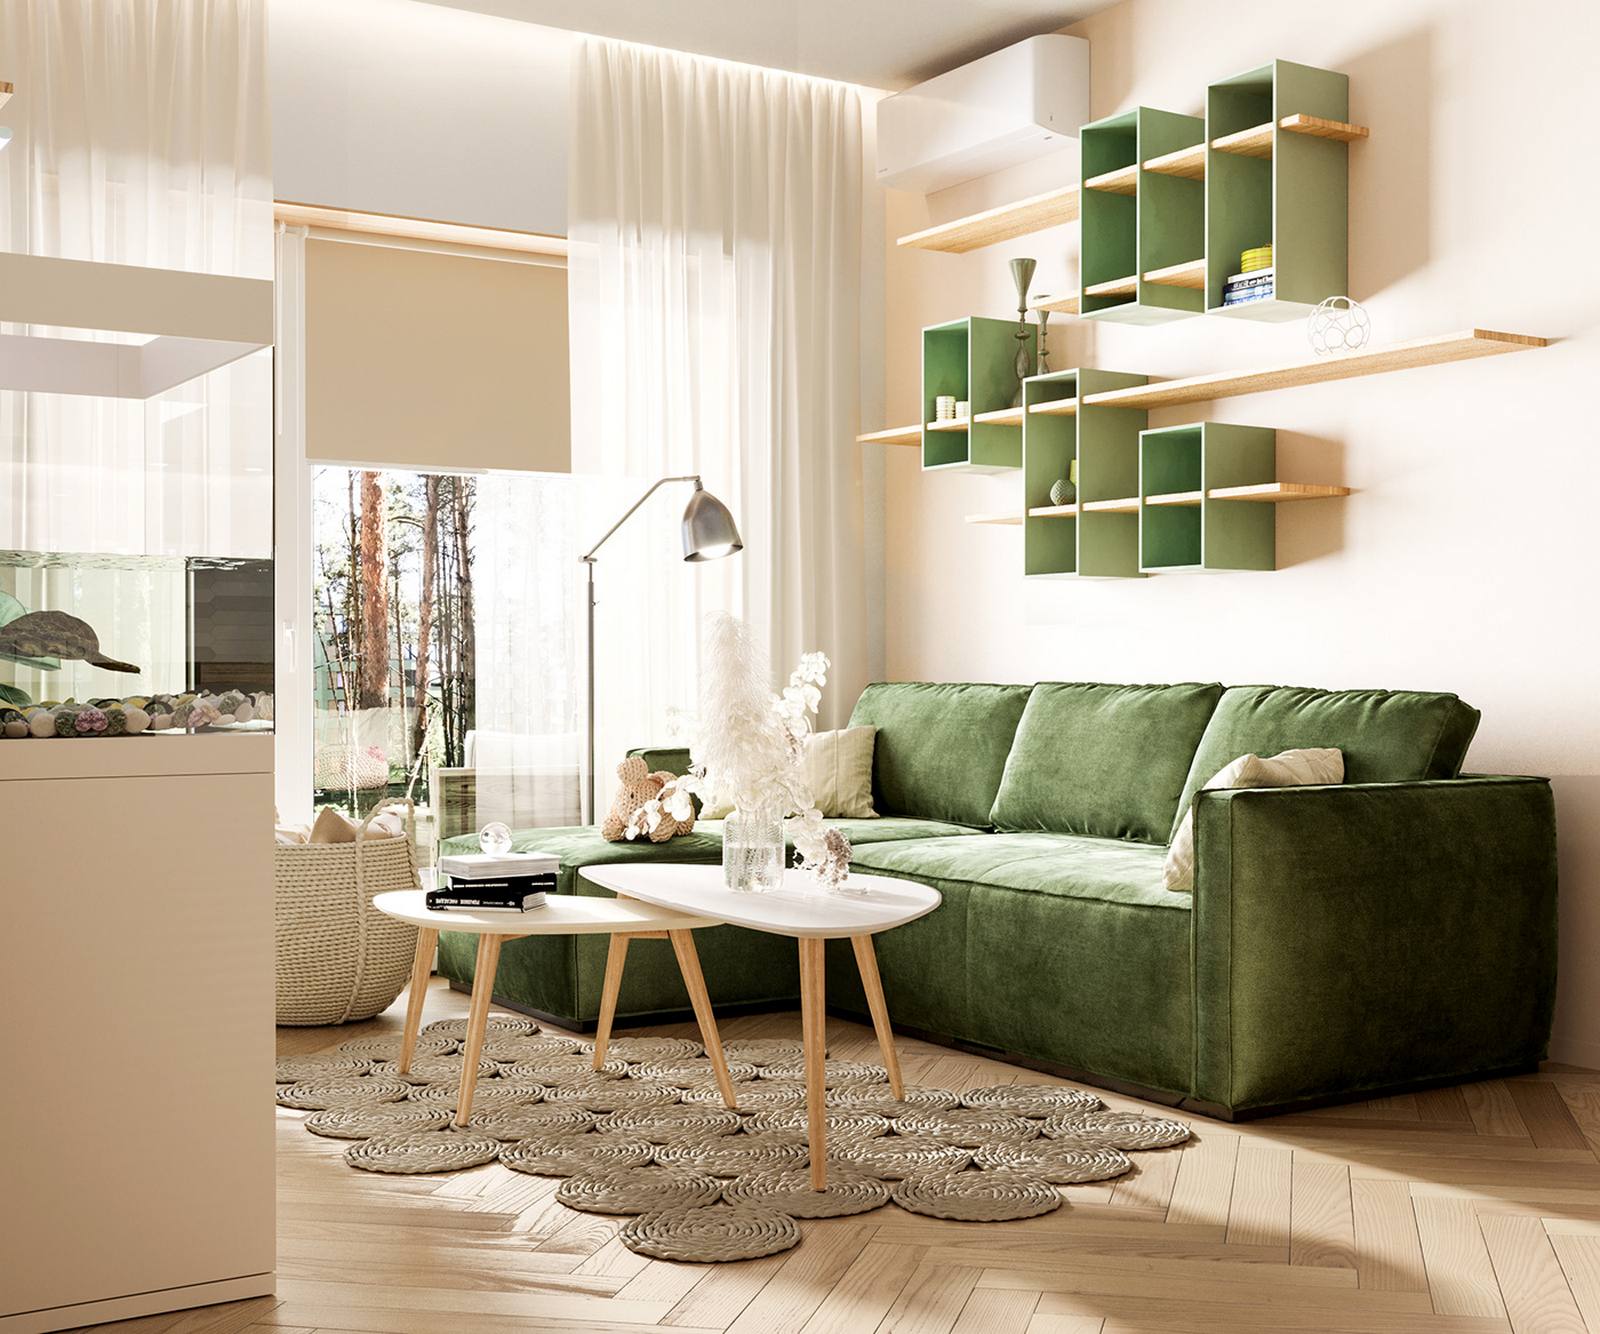 Bức tường sau ghế sofa được thiết lập hệ kệ mở tiện ích đồng màu xanh ô liu cho vẻ đẹp hài hòa. Tấm thảm dệt thủ công cũng giúp phân vùng phòng khách xinh xắn hơn.